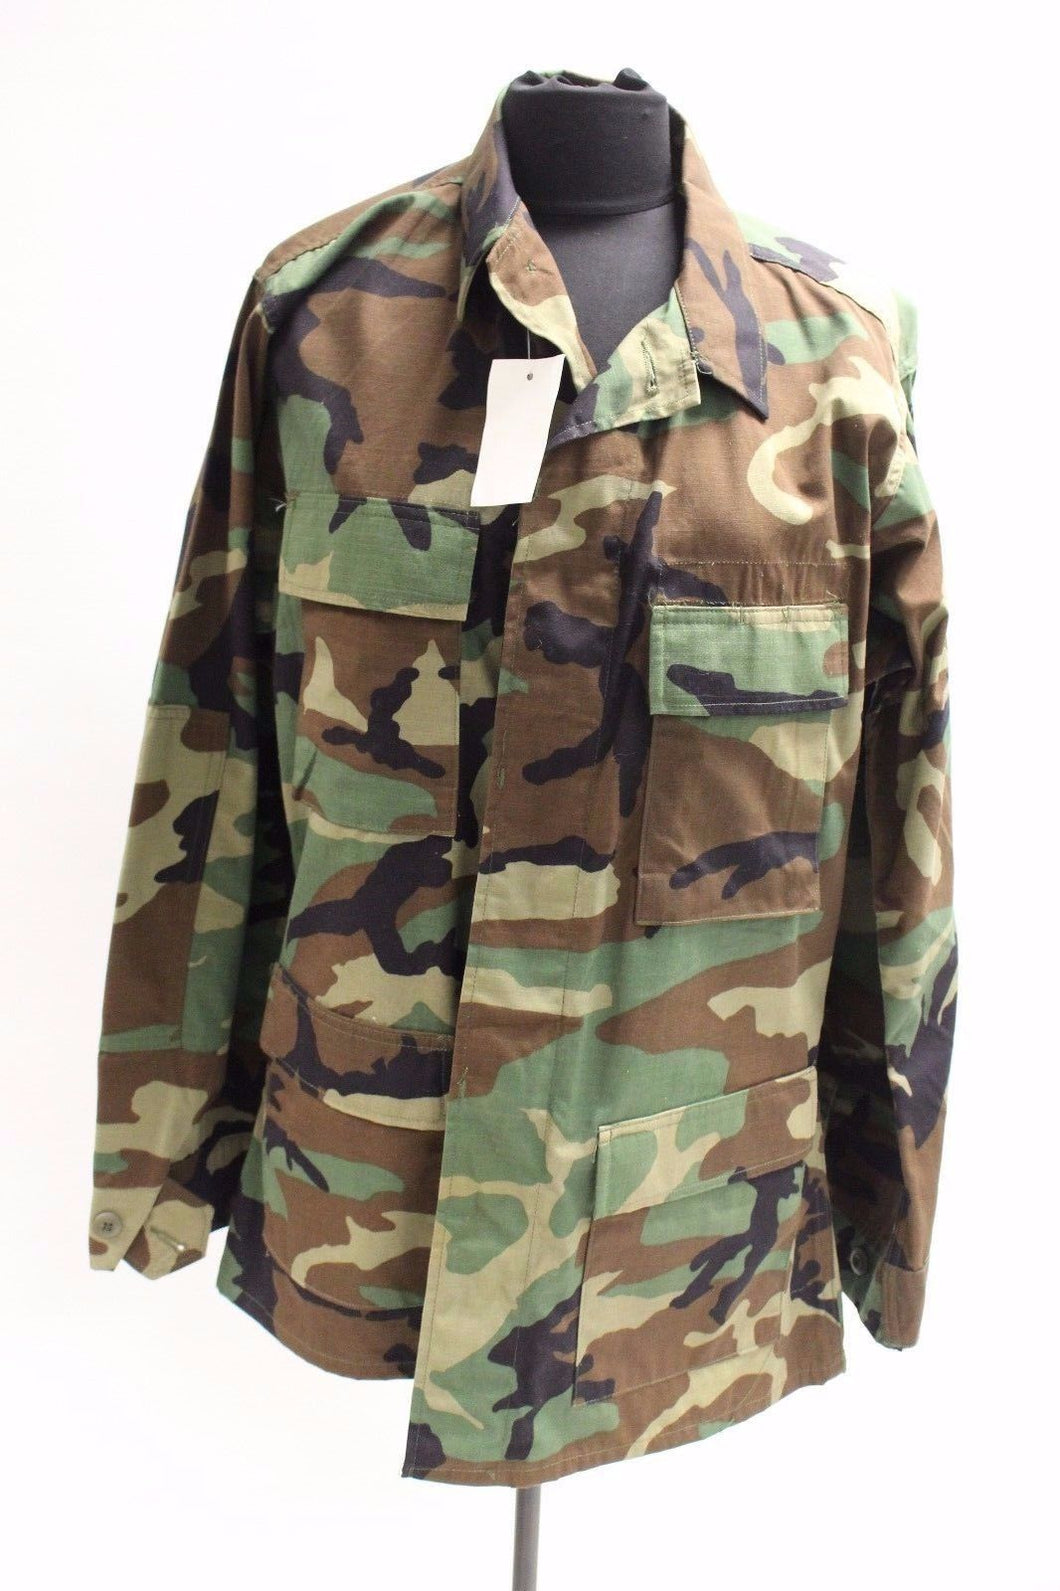 US Army Woodland BDU Combat Jacket Coat - Large Long - 8415-01-084-1650 - New